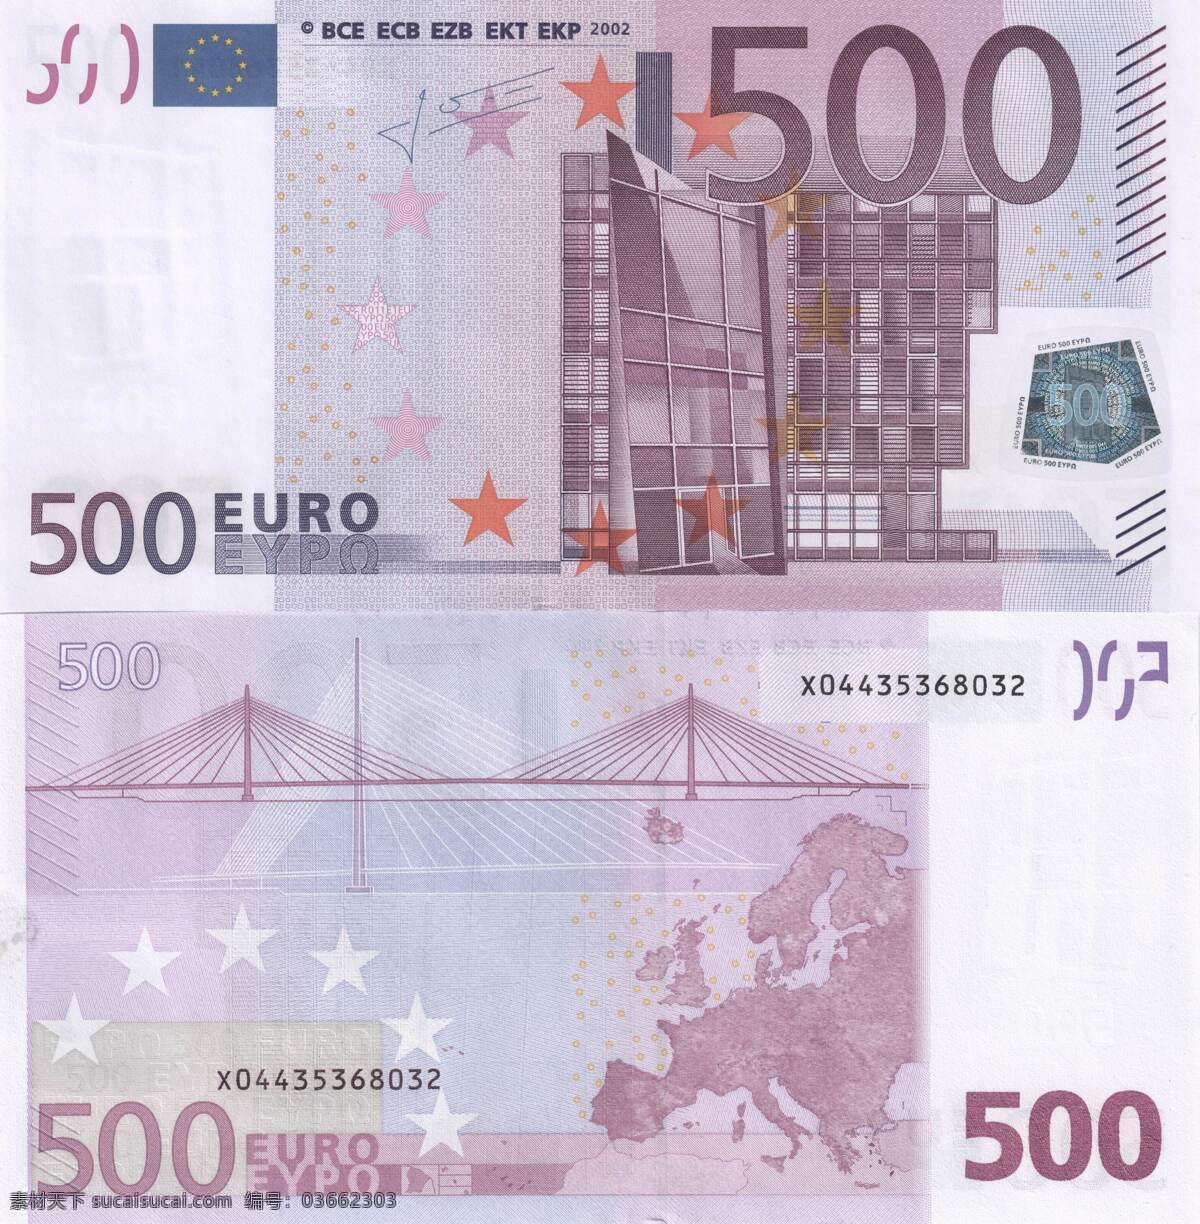 各国纸币 纸币 外币 钱币 金钱 美元 欧元 人民币 钞票 商务金融 金融货币